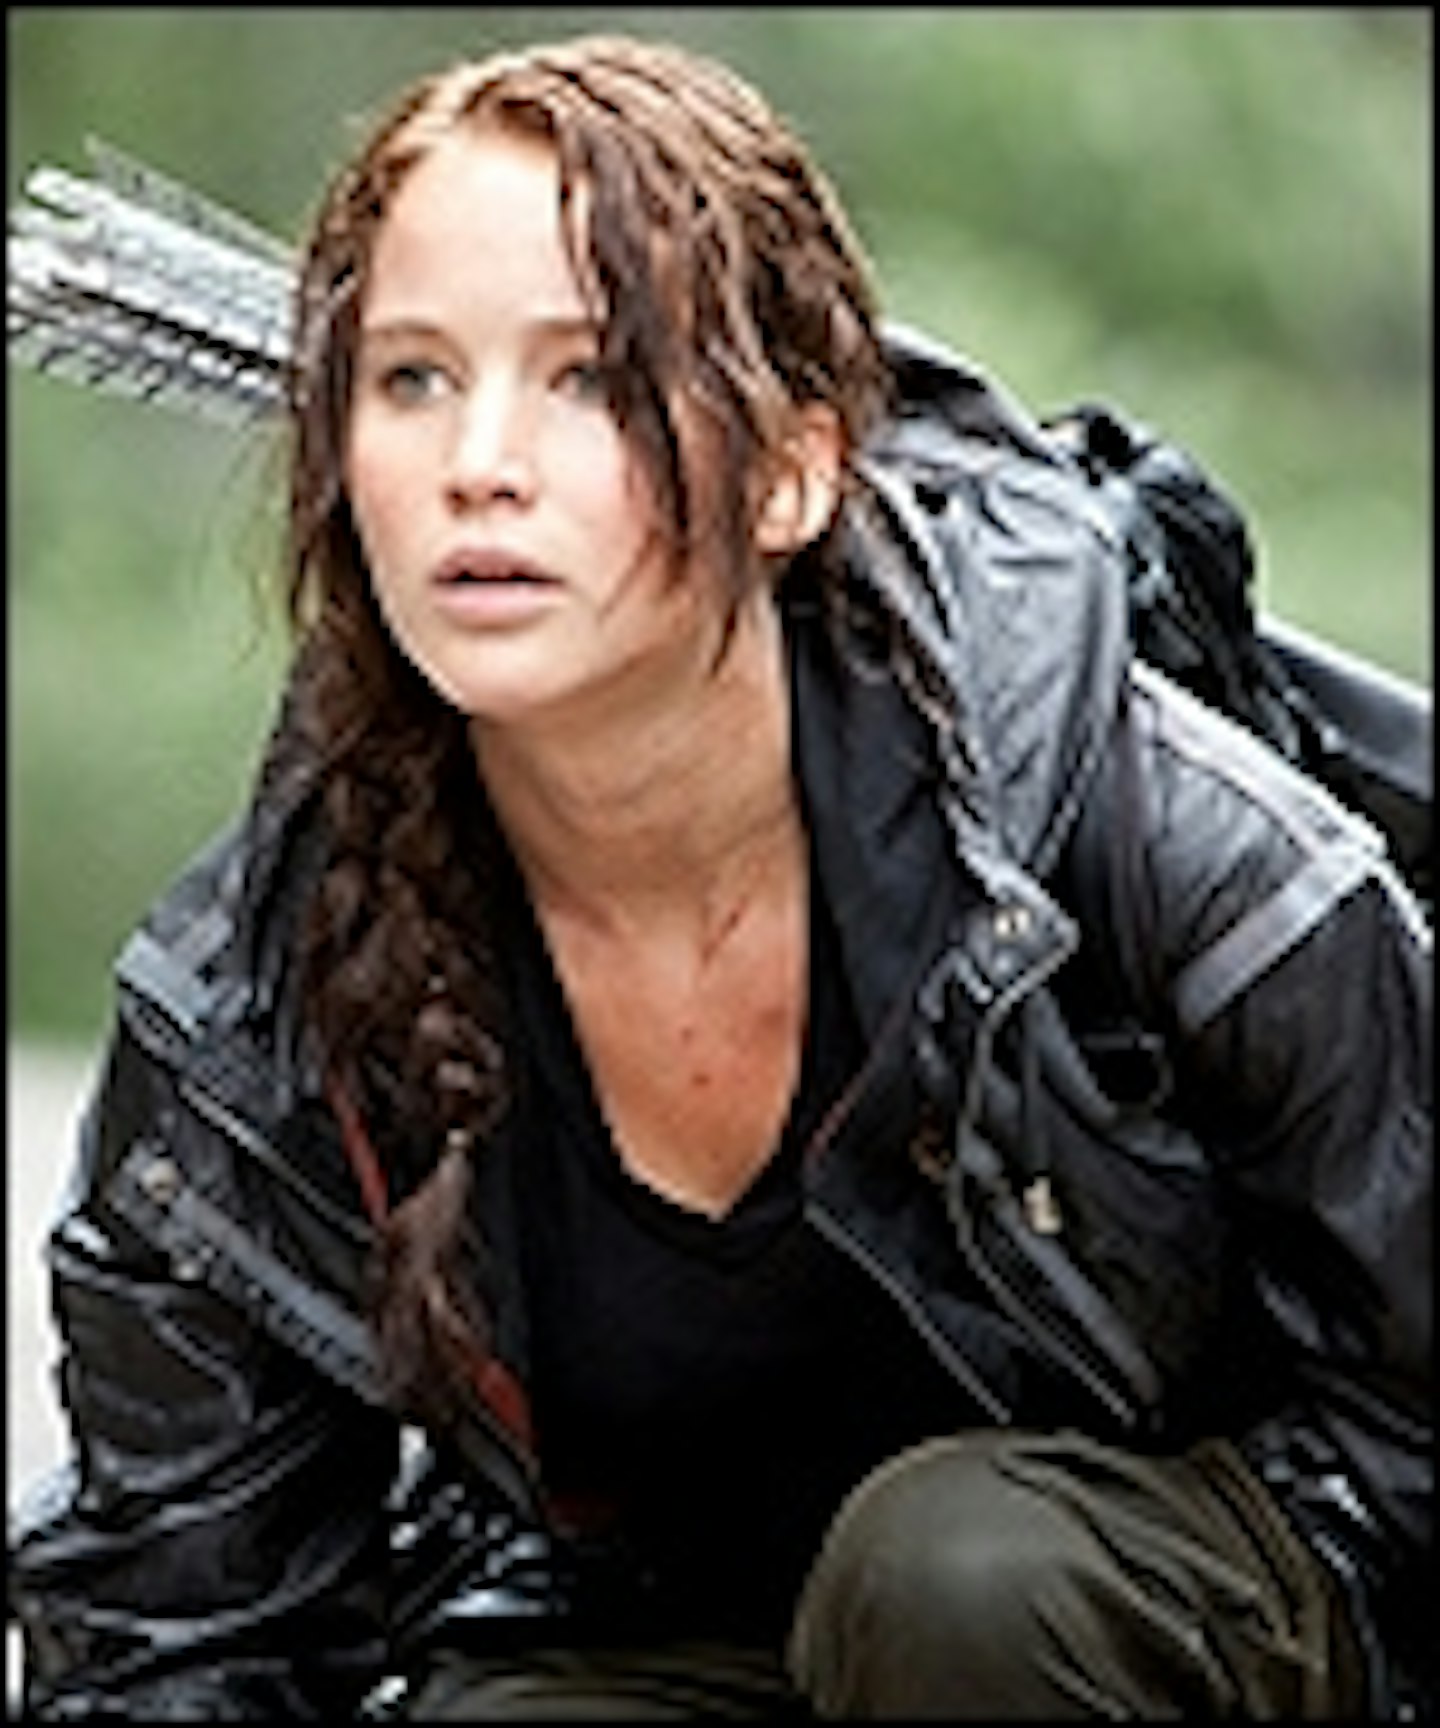 Hunger Games Trailer Arrives Online